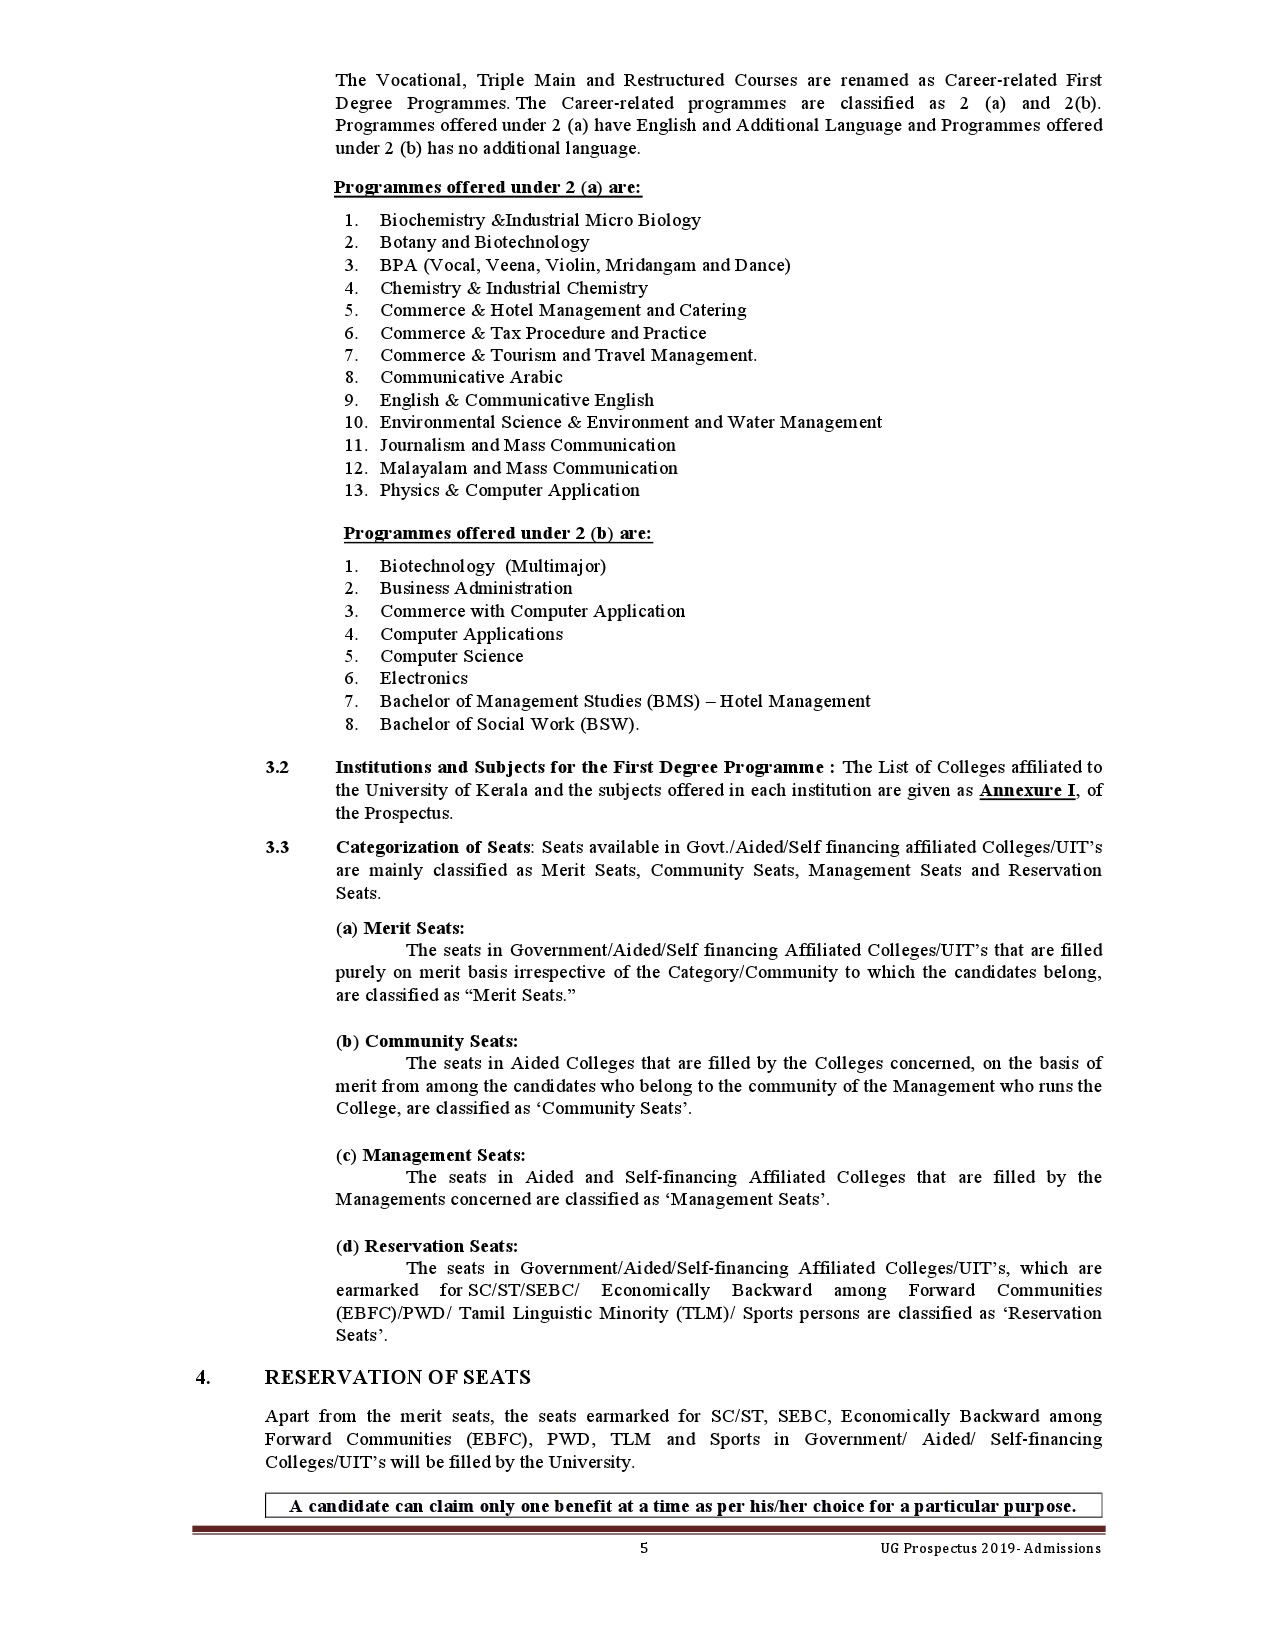 Kerala University UG Admission Prospectus 2019 - Notification Image 5